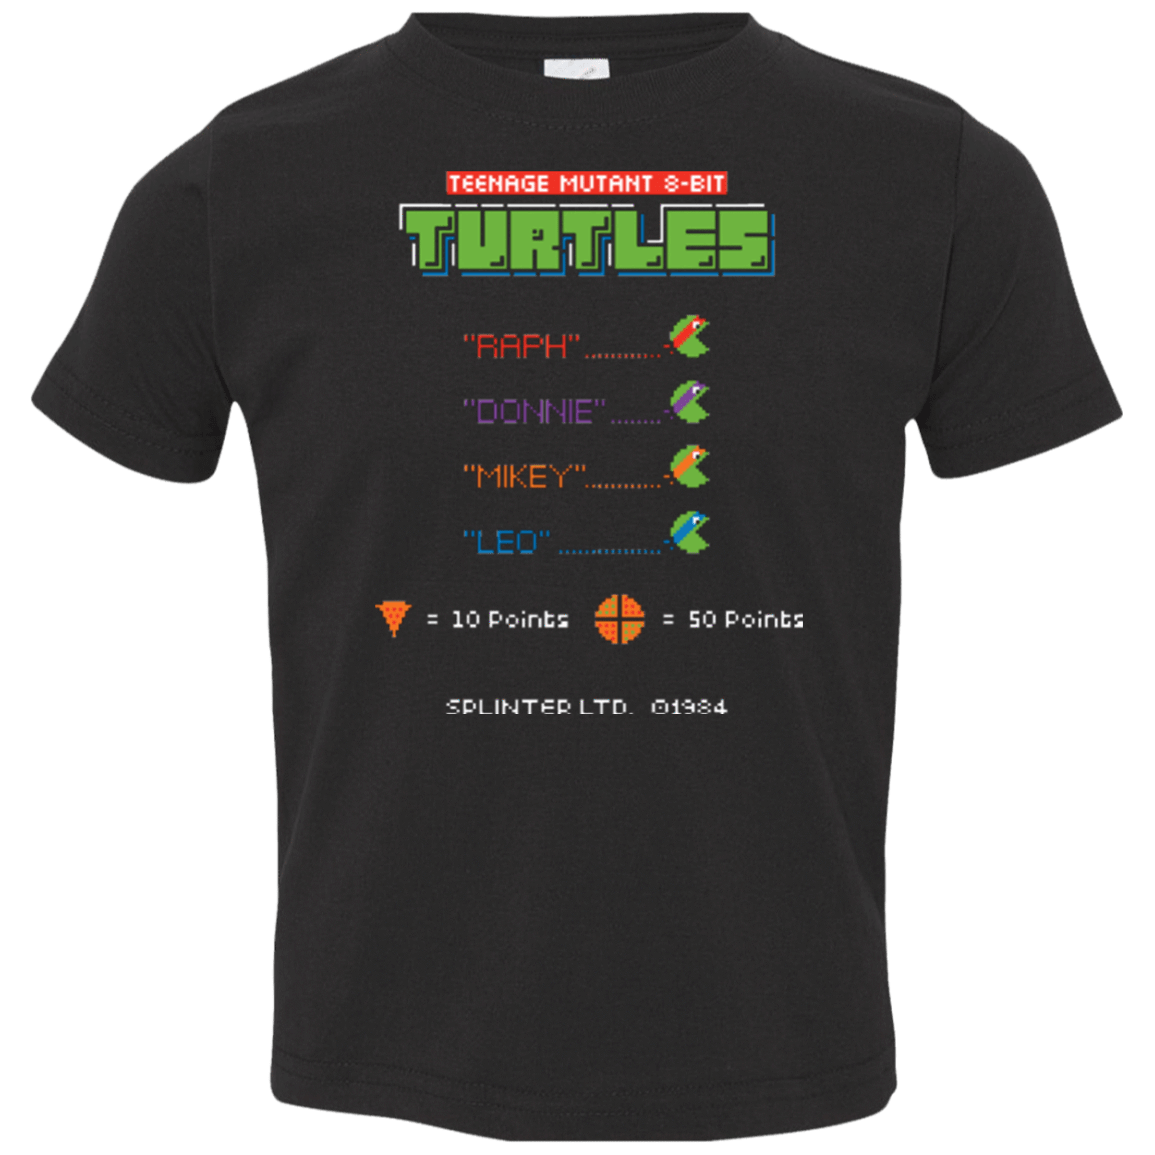 T-Shirts Black / 2T 8 Bit Turtles Toddler Premium T-Shirt